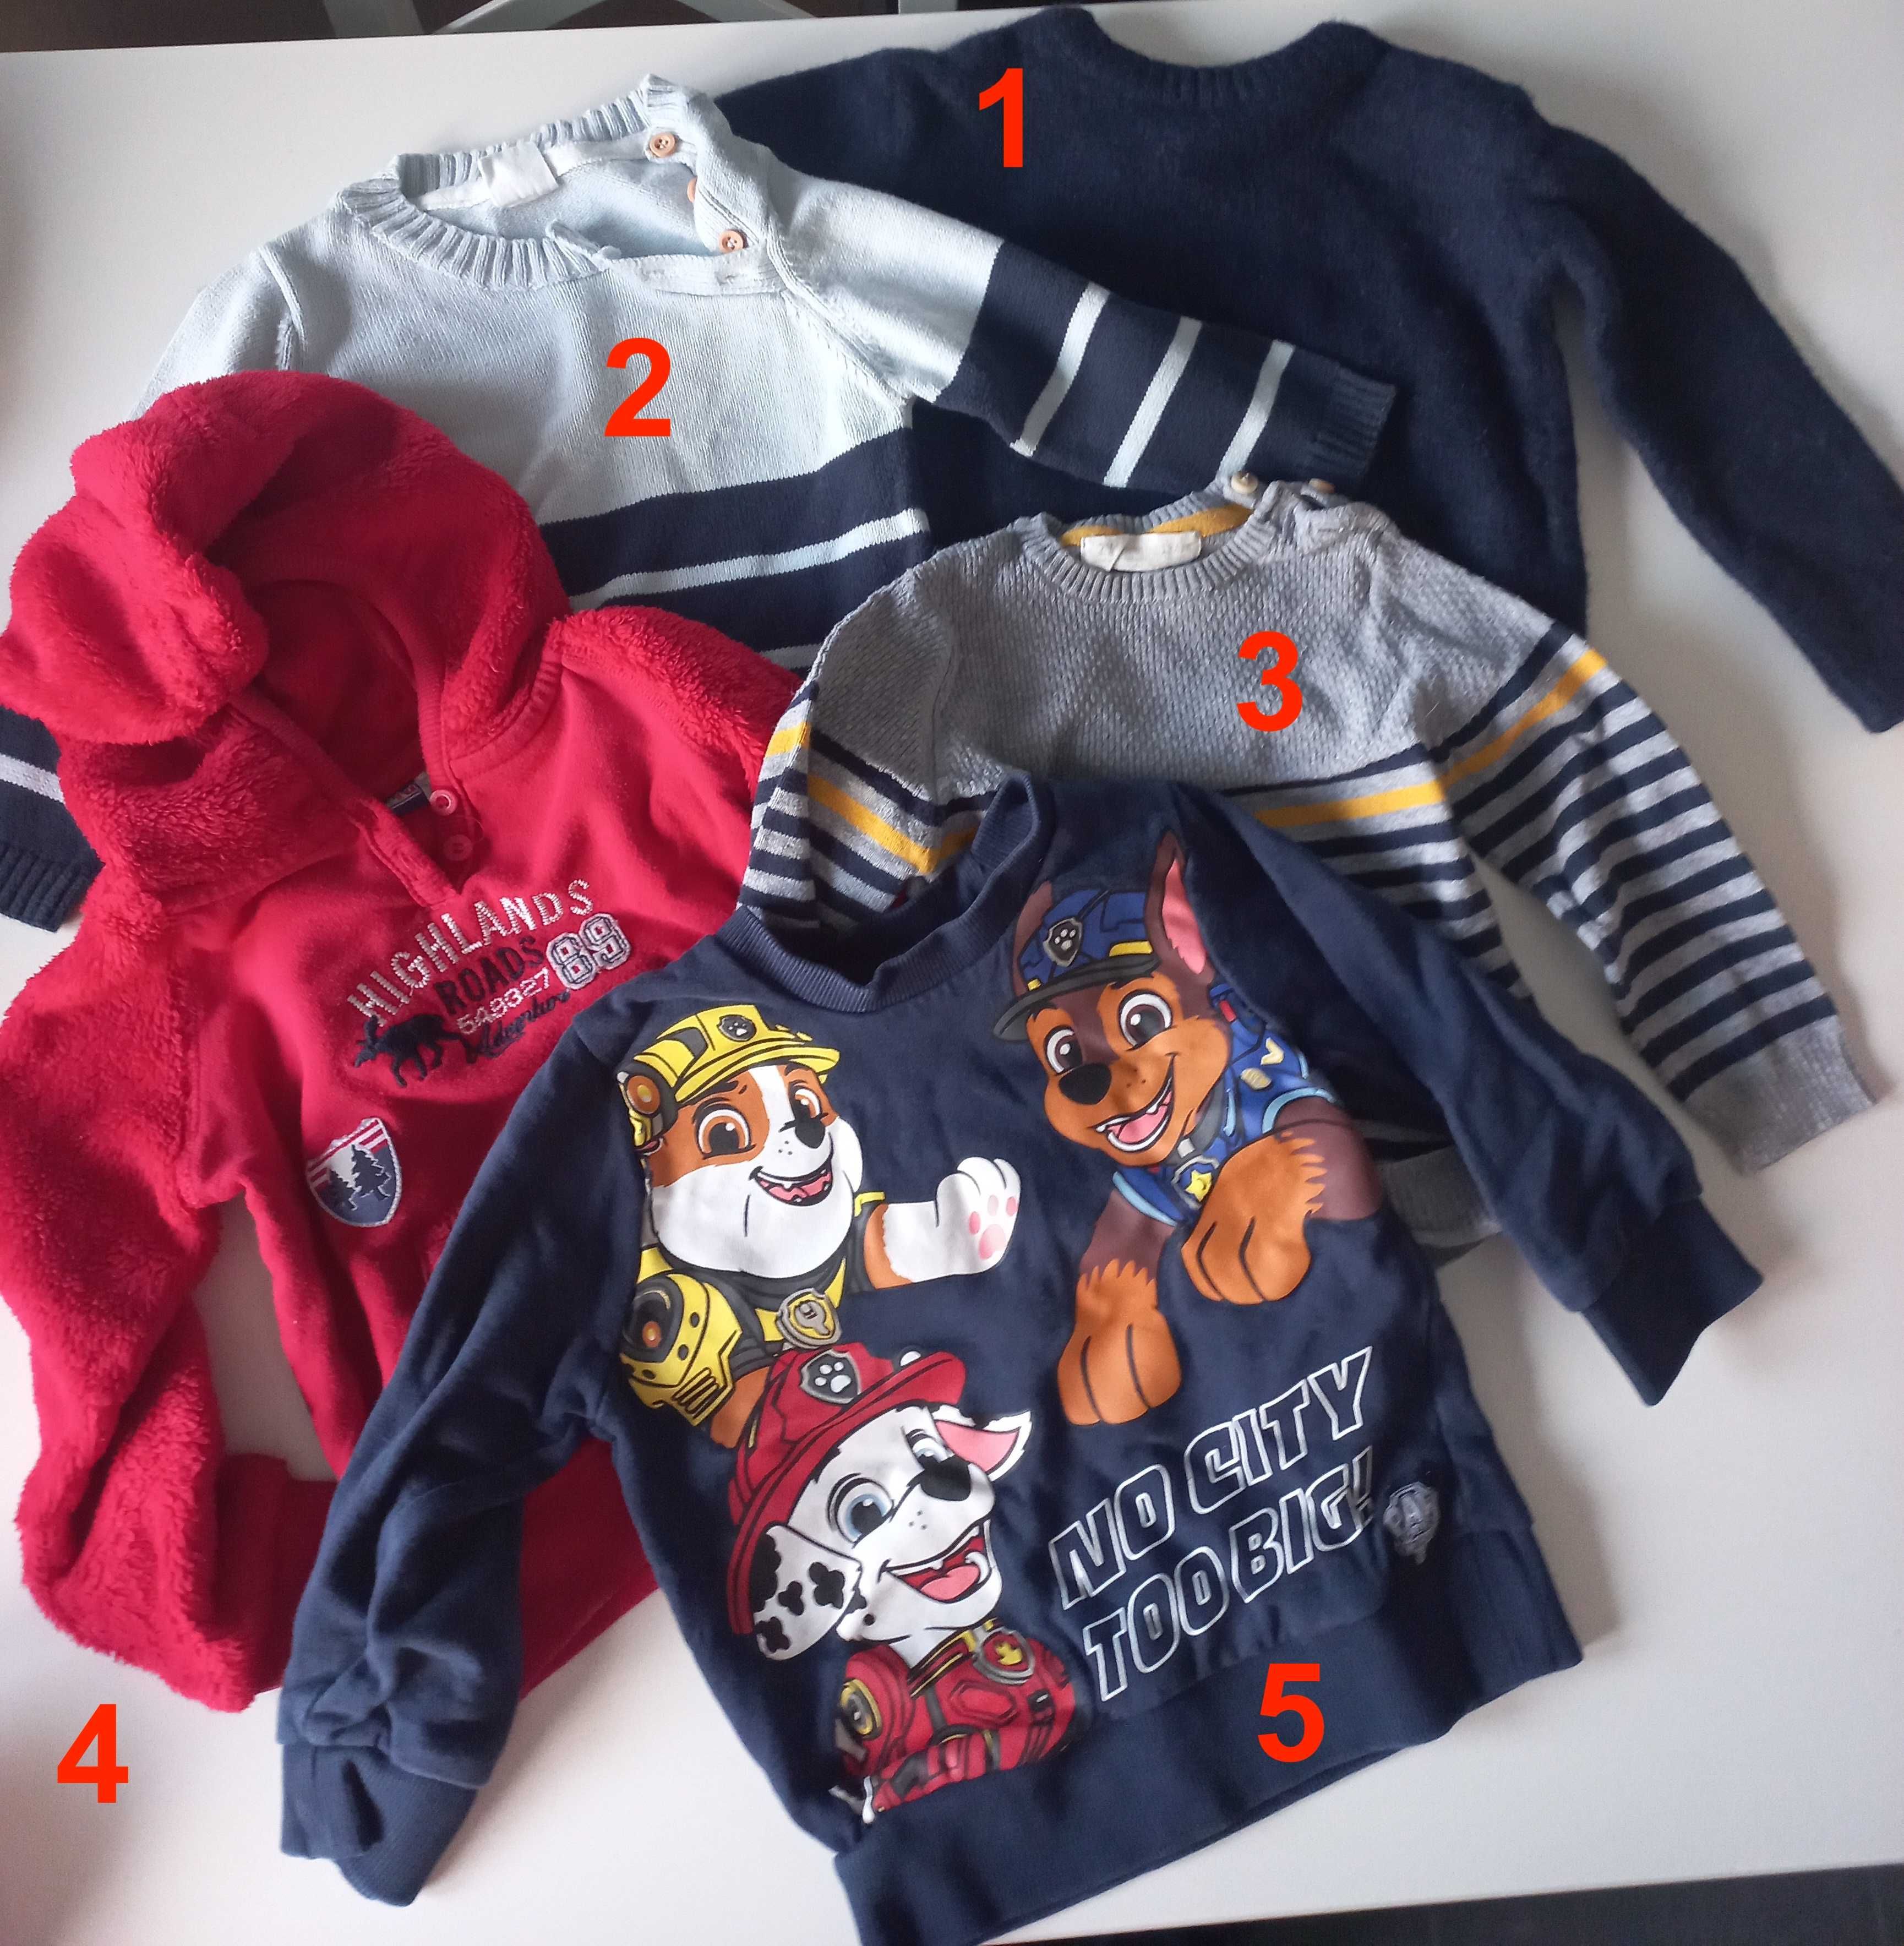 Camisolas, casacos e pijamas (pack 3) (24 e 36 meses)